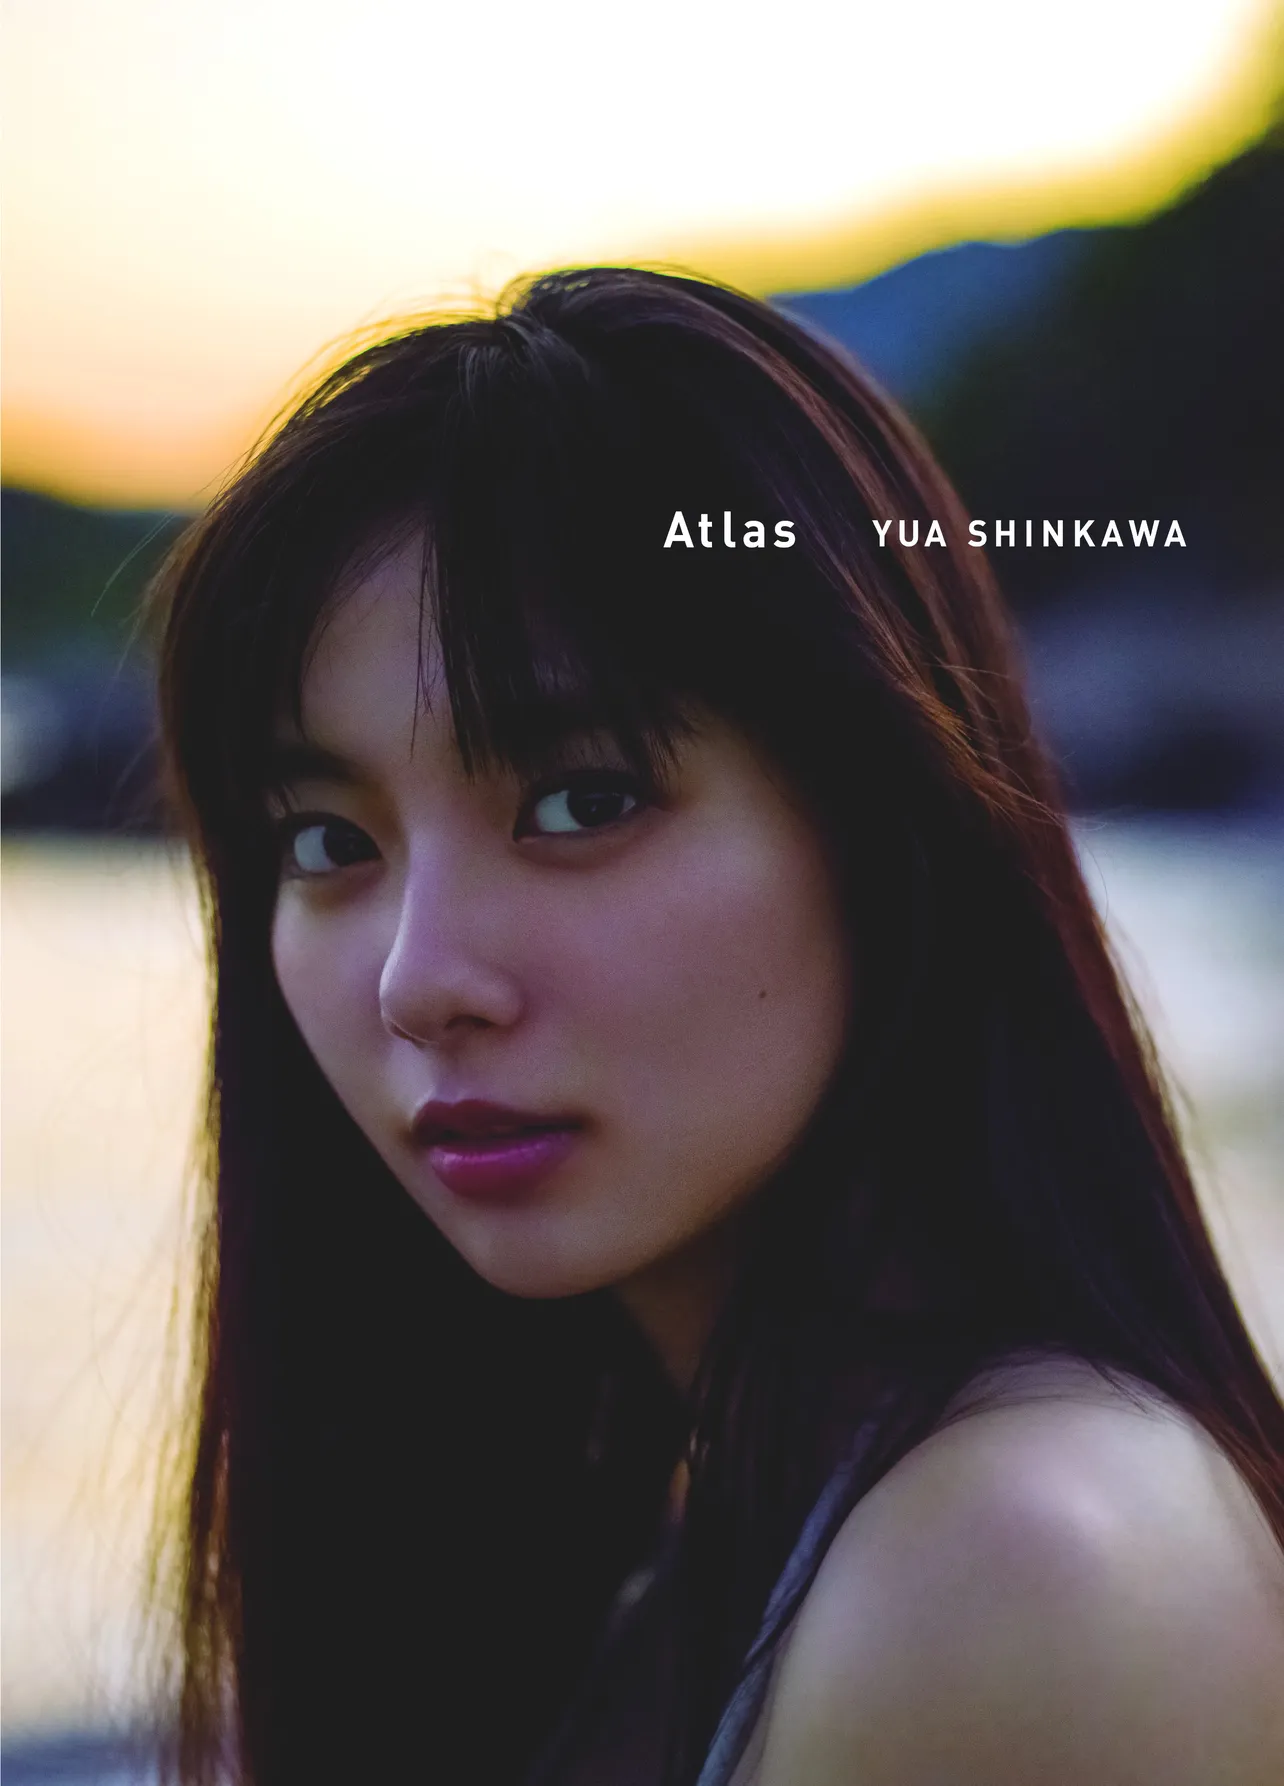 新川優愛セカンド写真集「Atlas」は3000円(税込)で発売中